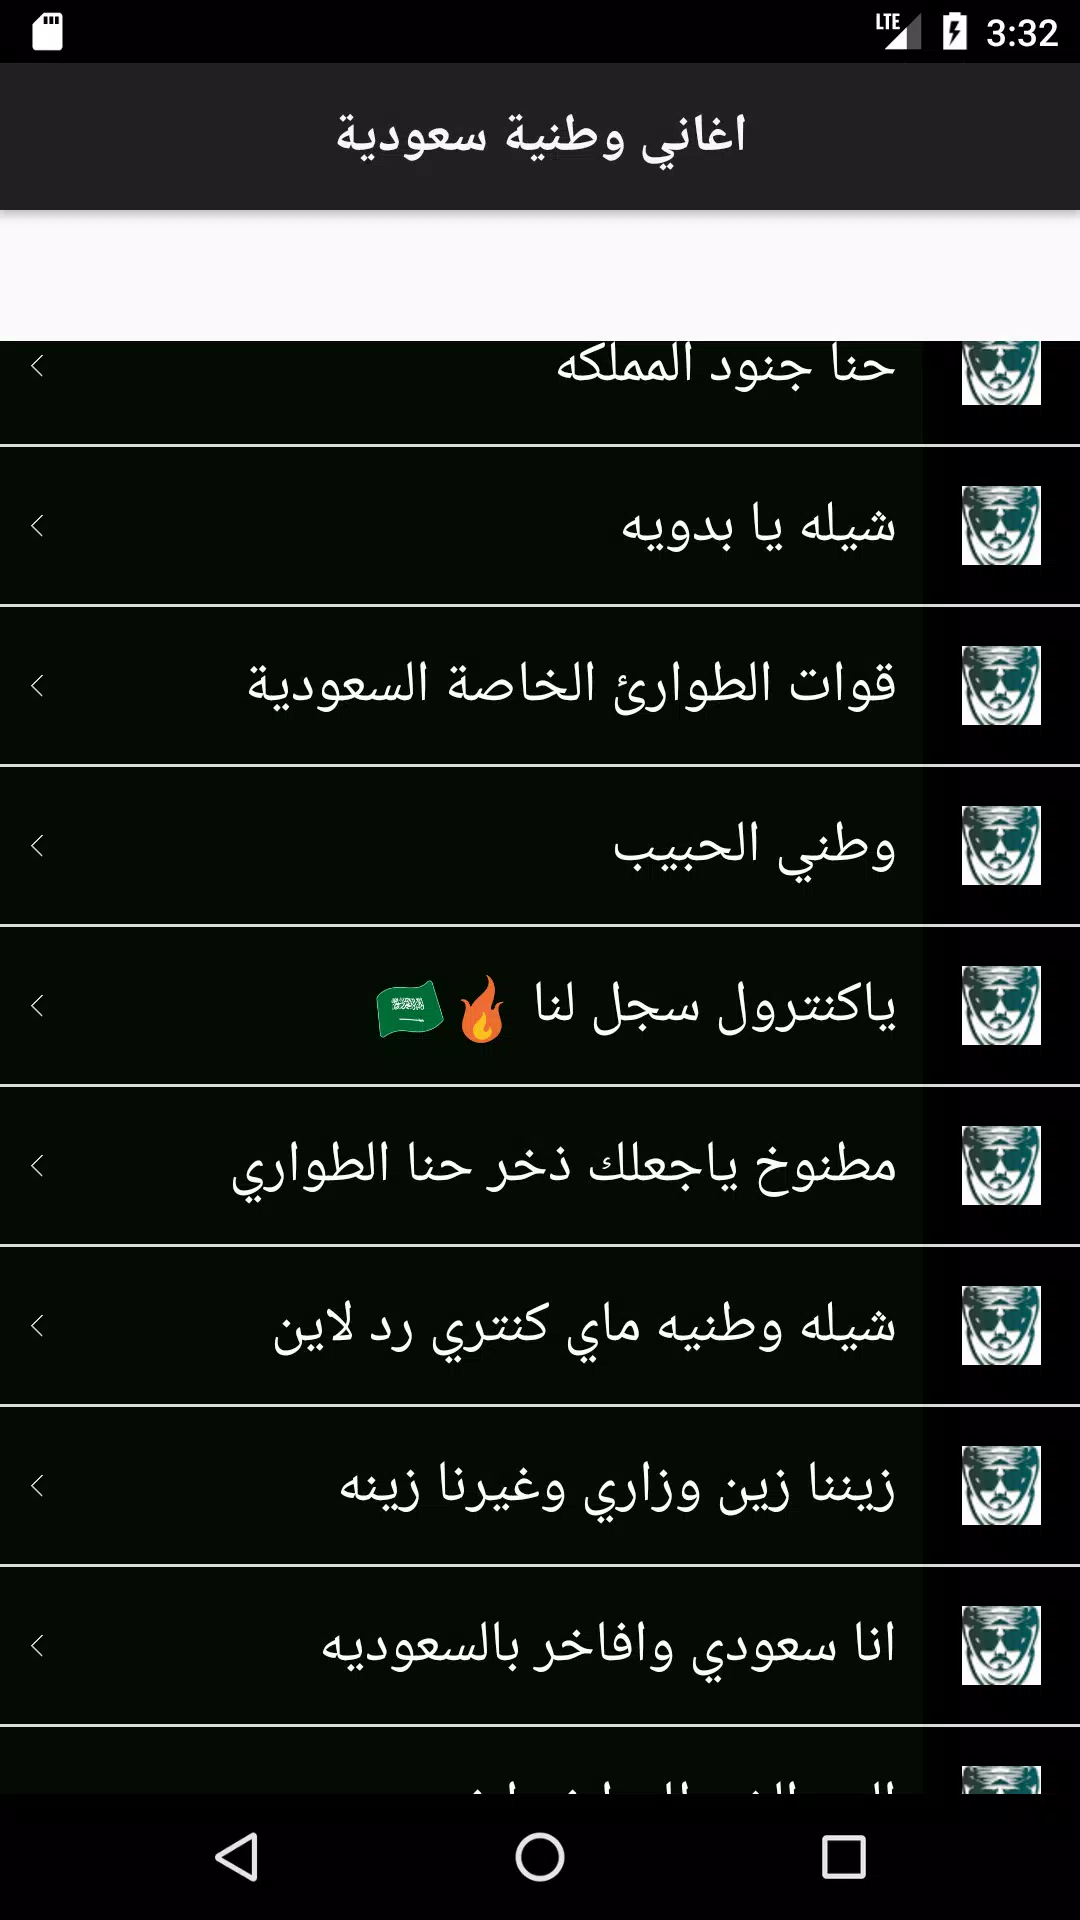 اغاني وطنية سعودية حربية APK for Android Download